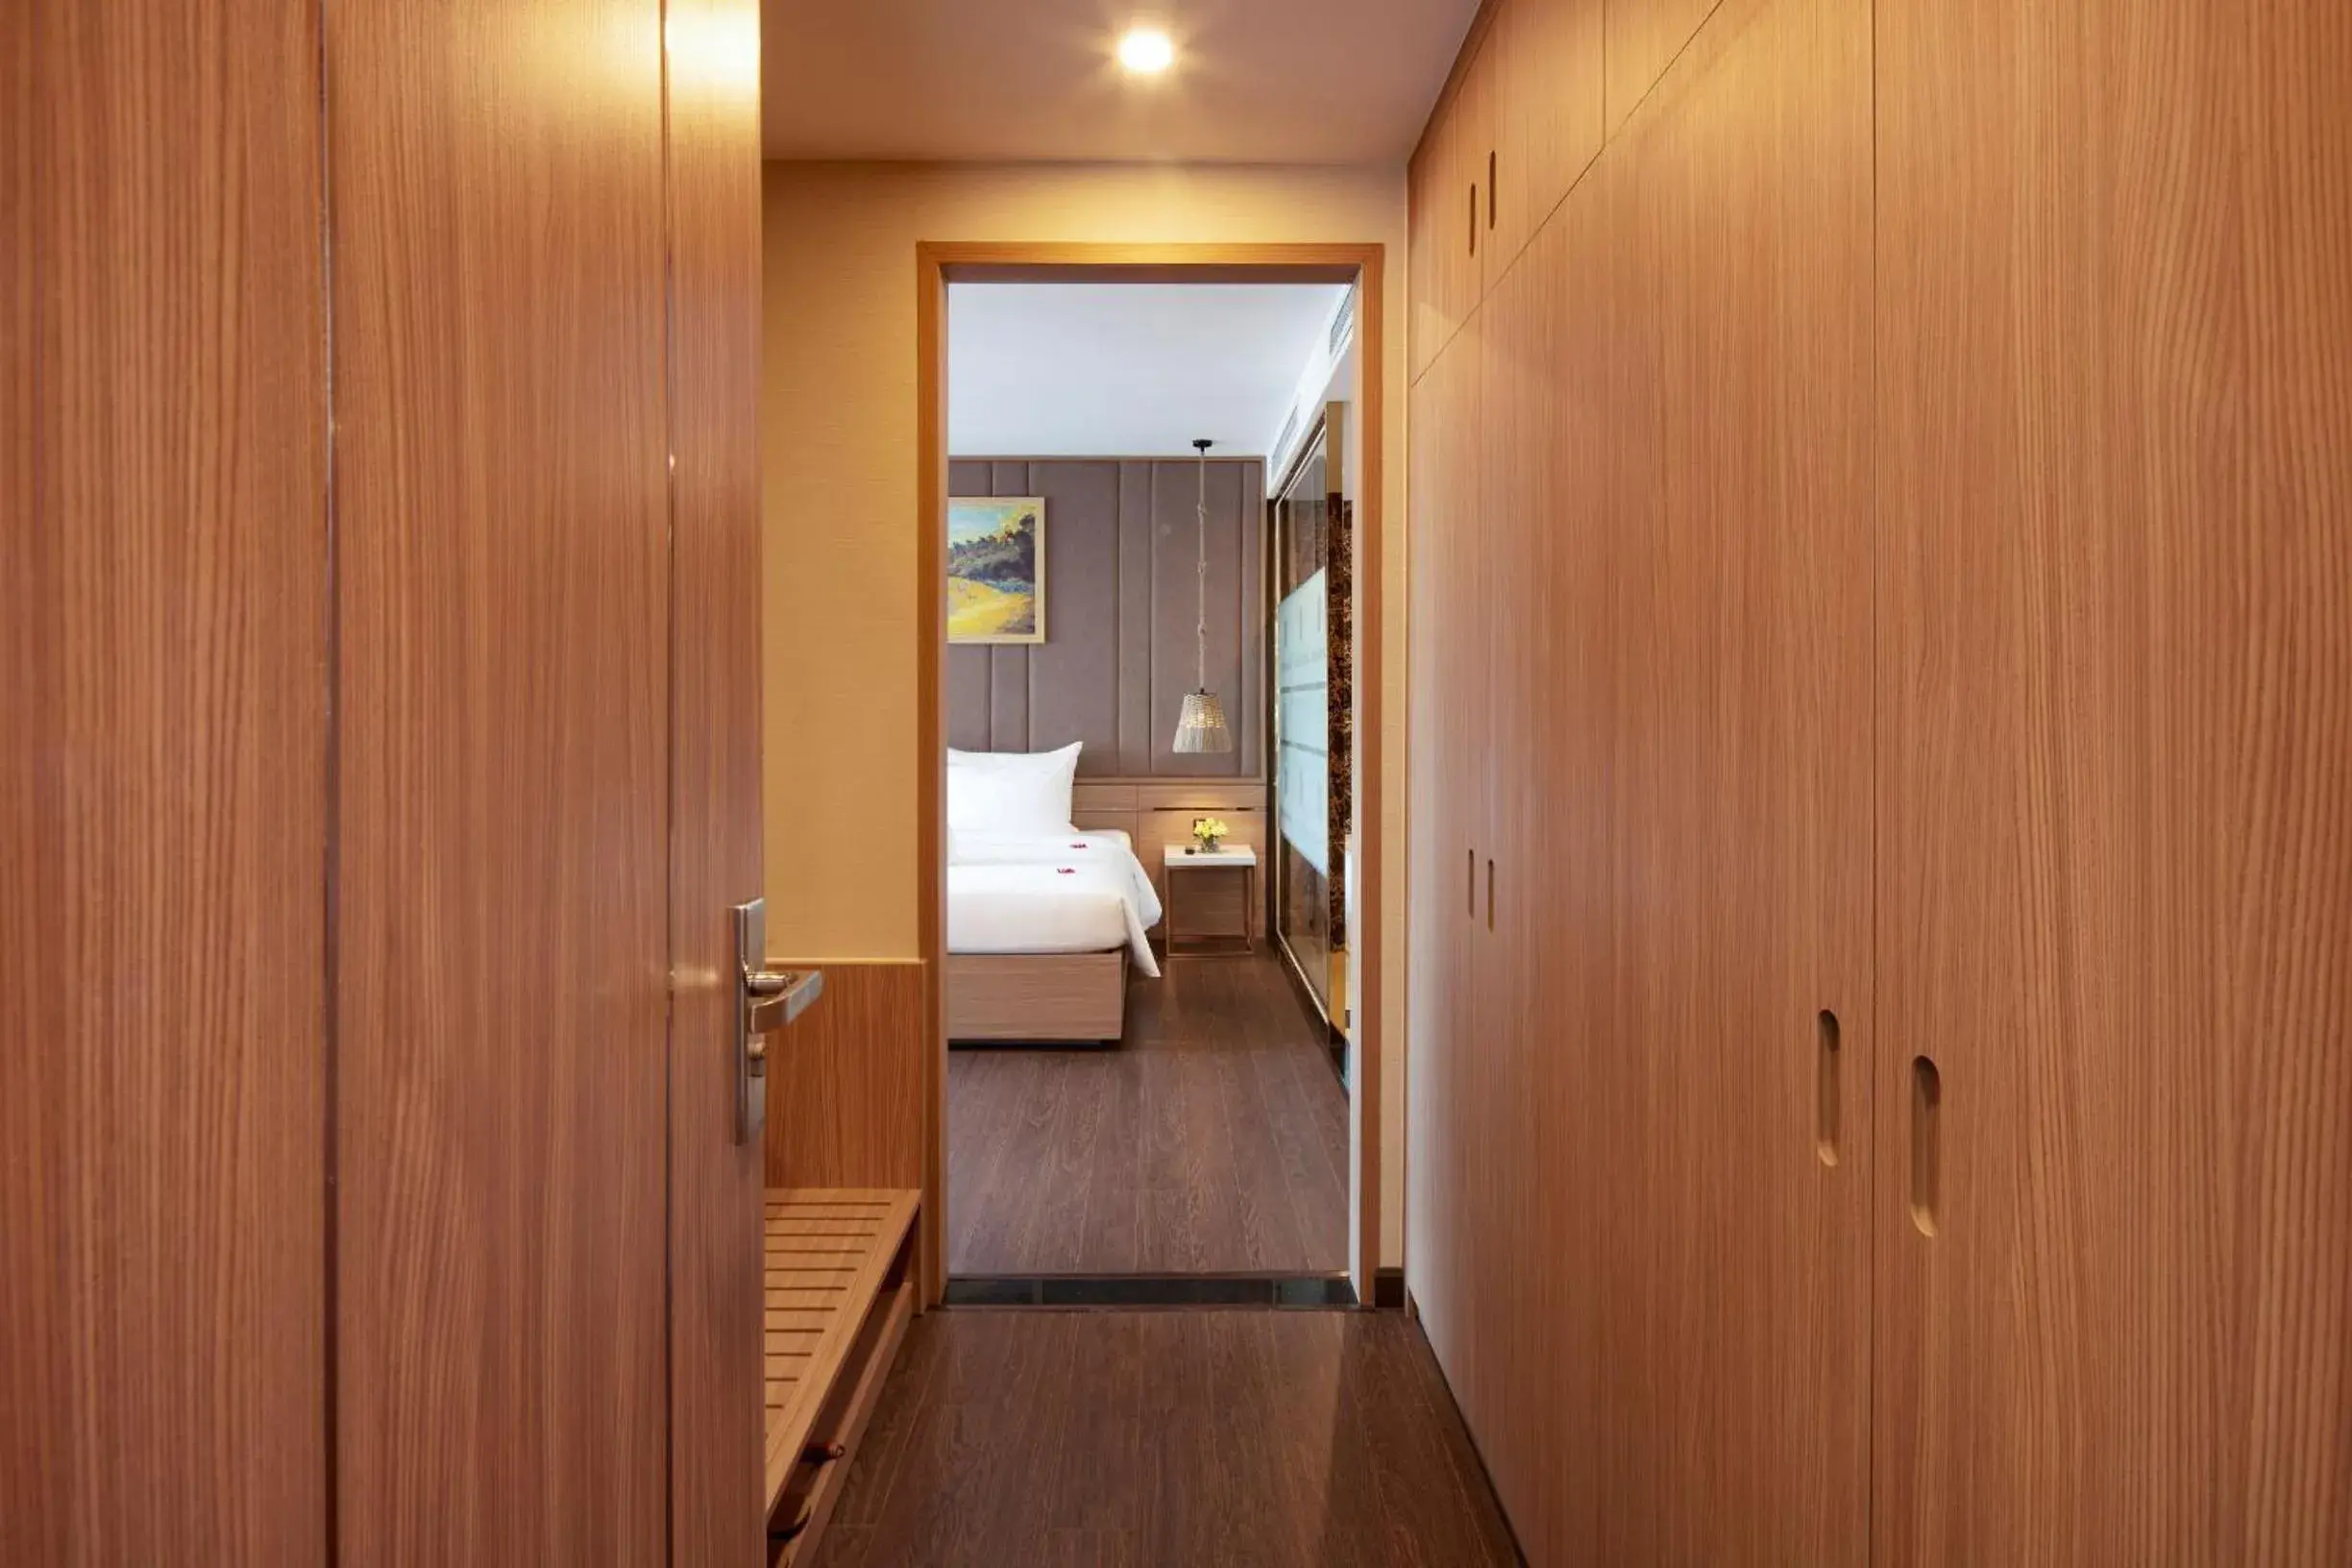 Bedroom, Bathroom in Virgo Hotel